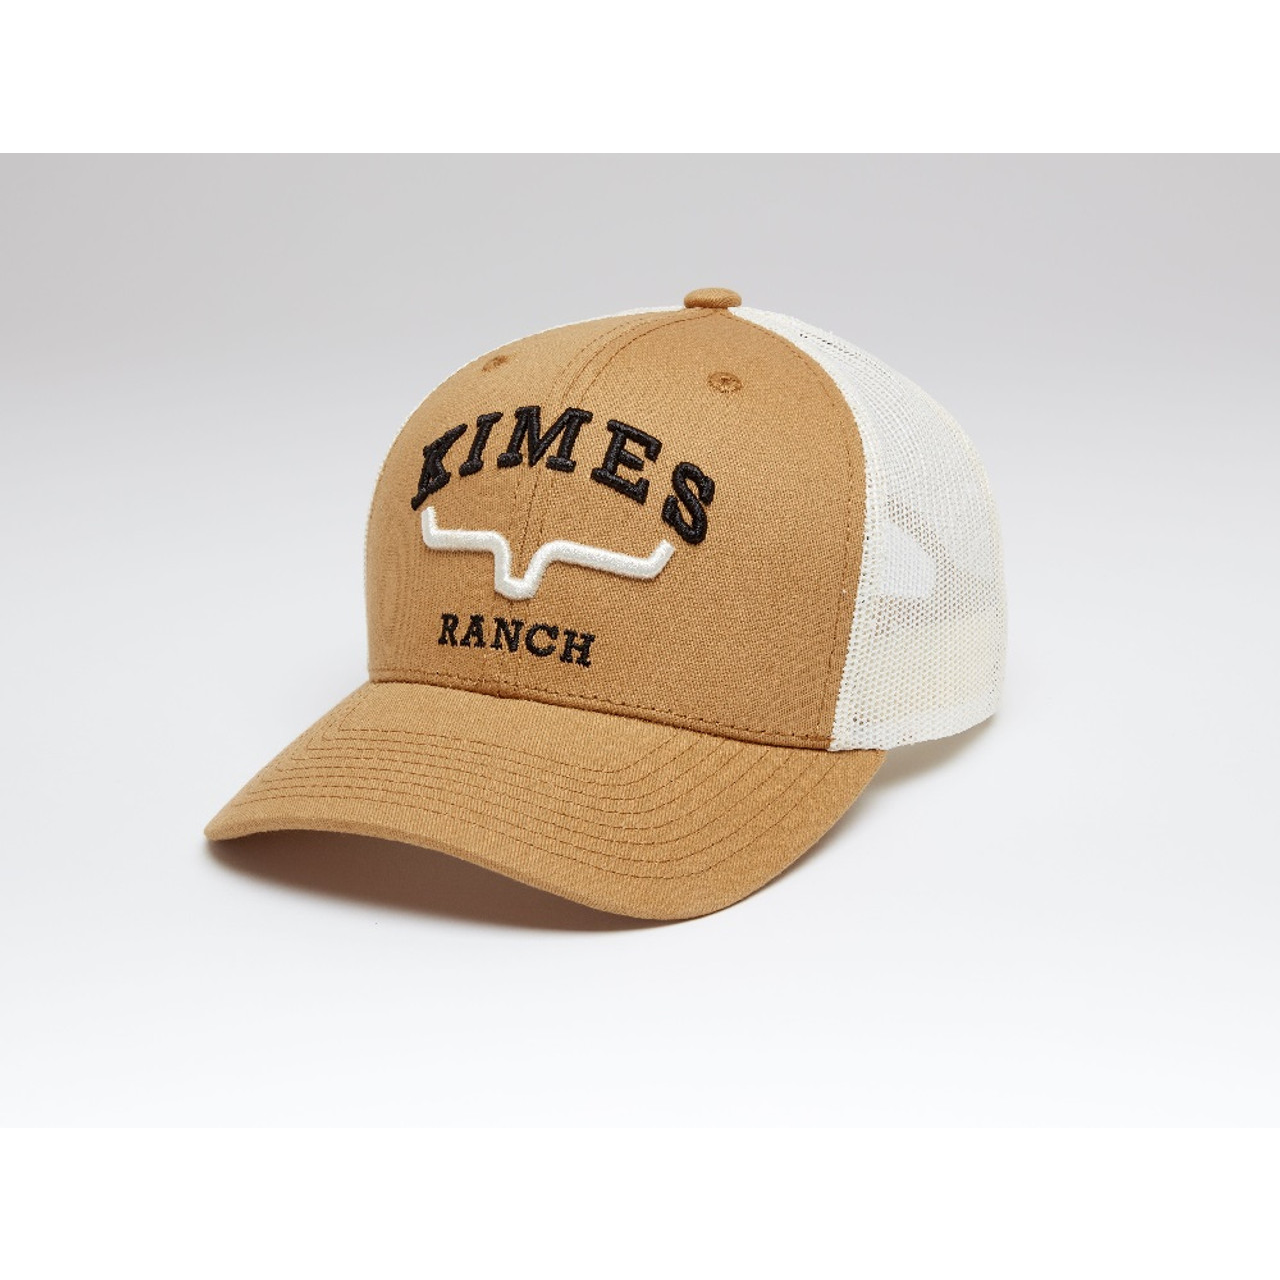 Kimes Ranch® Men's Since 2009 Brown Trucker Cap TRUCKER-BRN